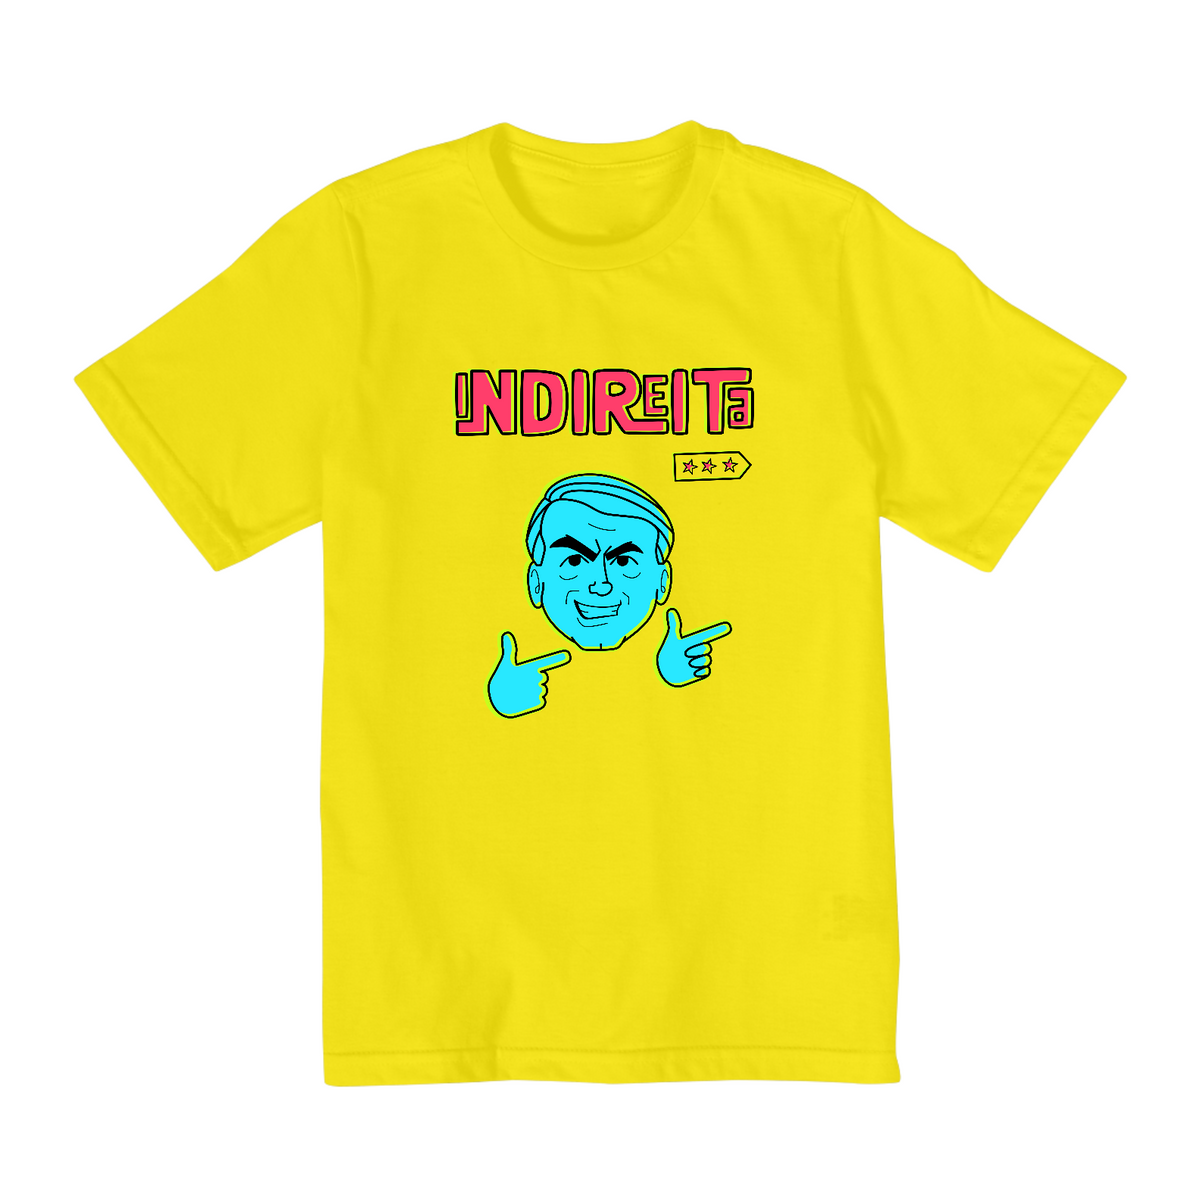 Nome do produto: Camiseta Infantil Indireita Color (2 a 8 anos) - Amarela e Branca, unissex